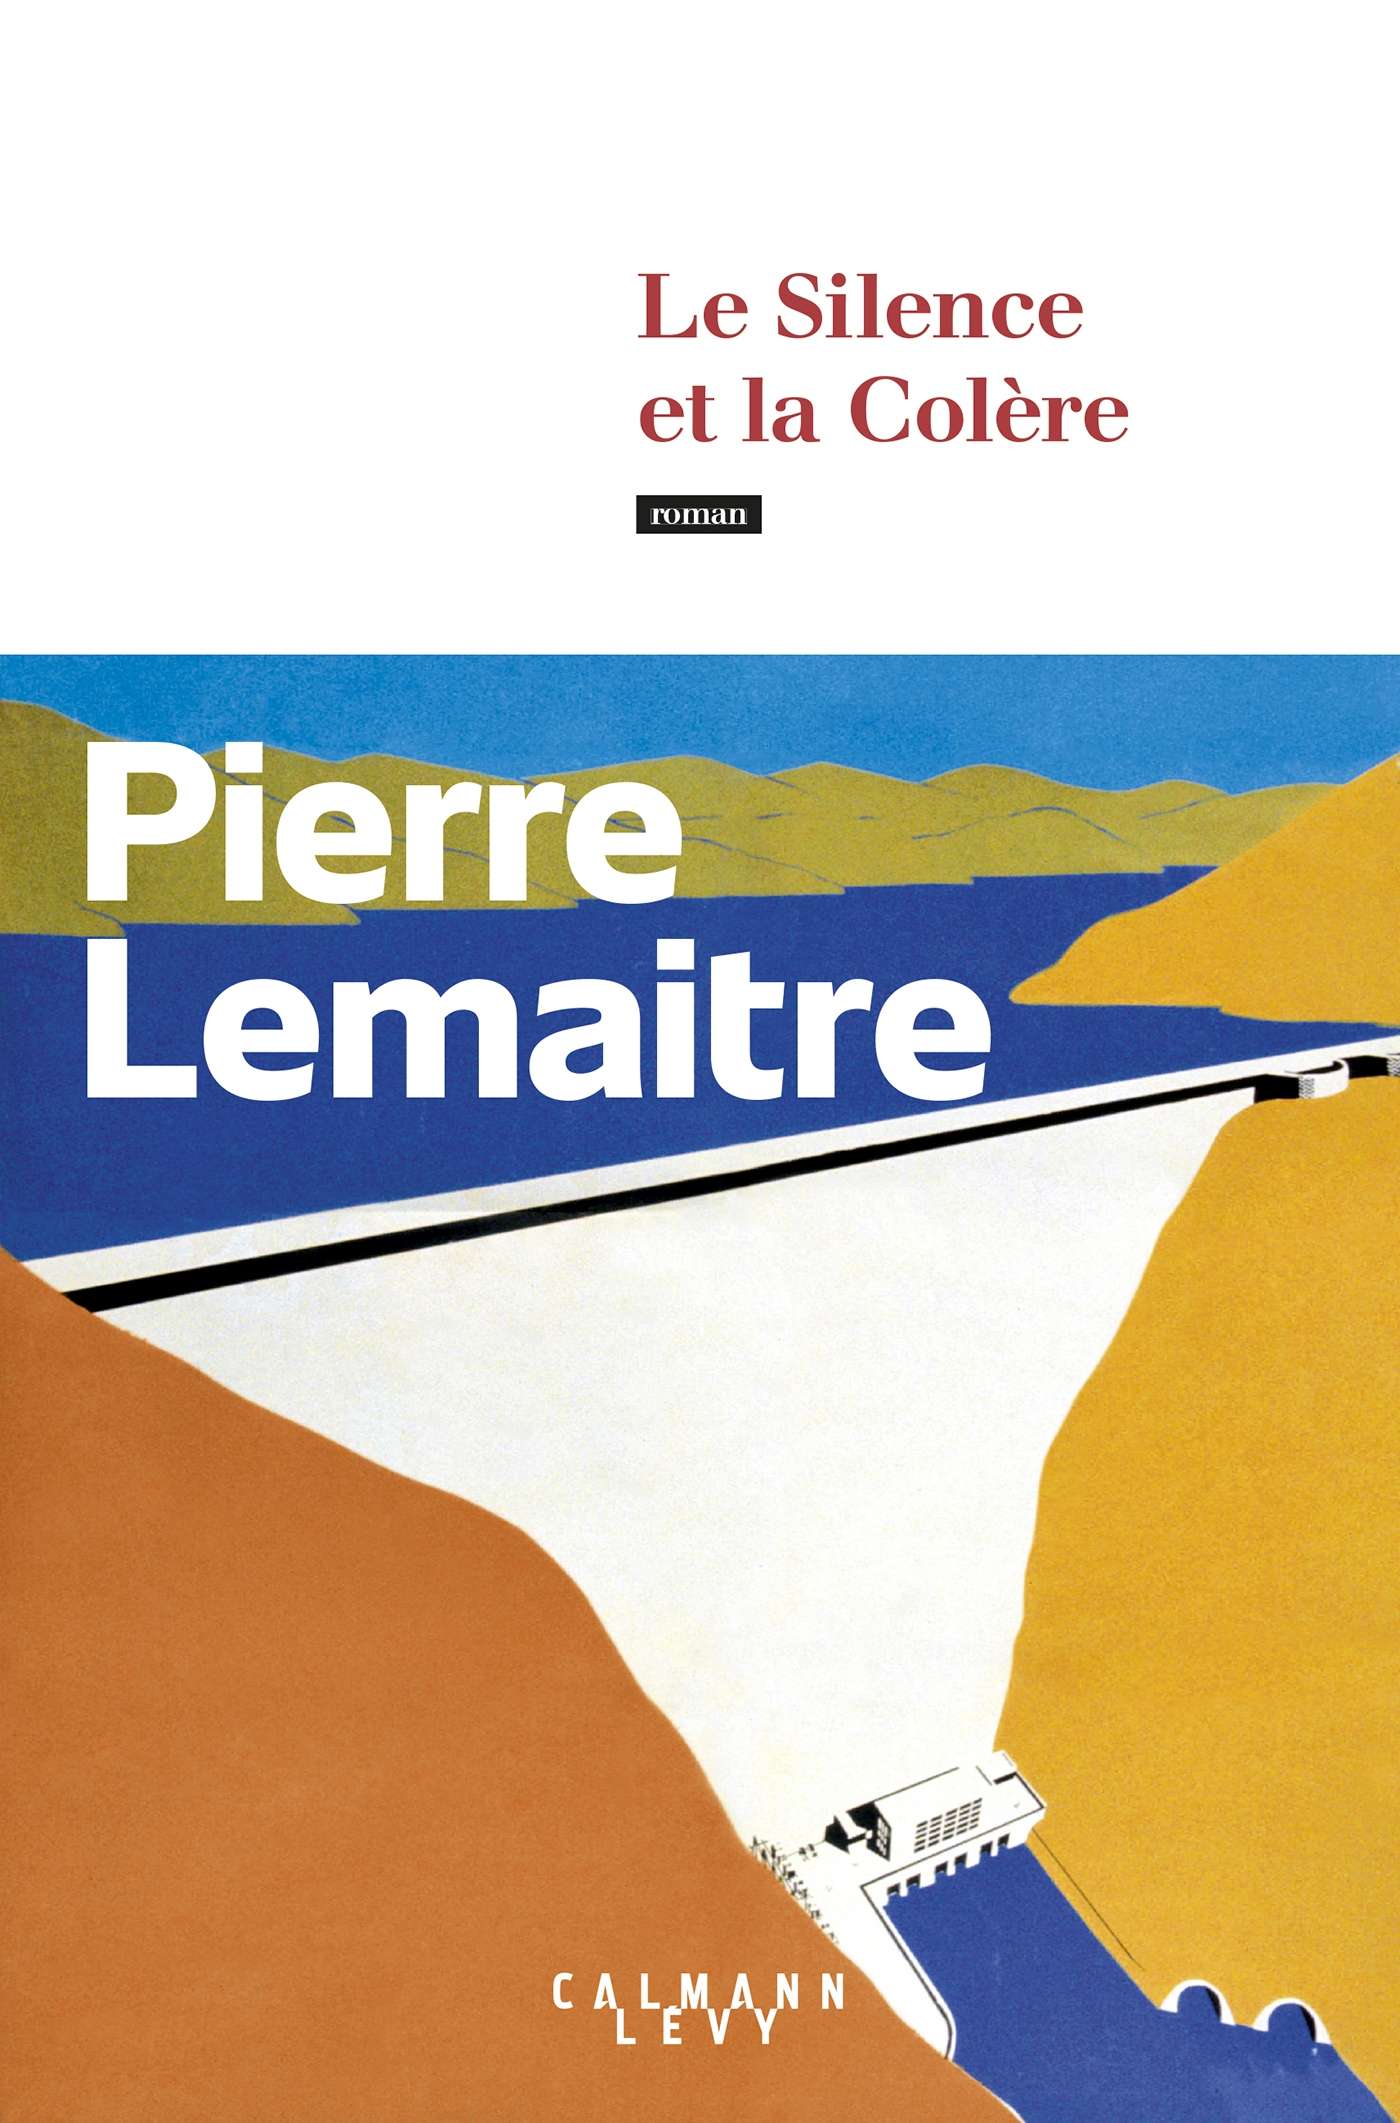 Le silence et la colère de Pierre Lemaitre (c) Calmann-Levy